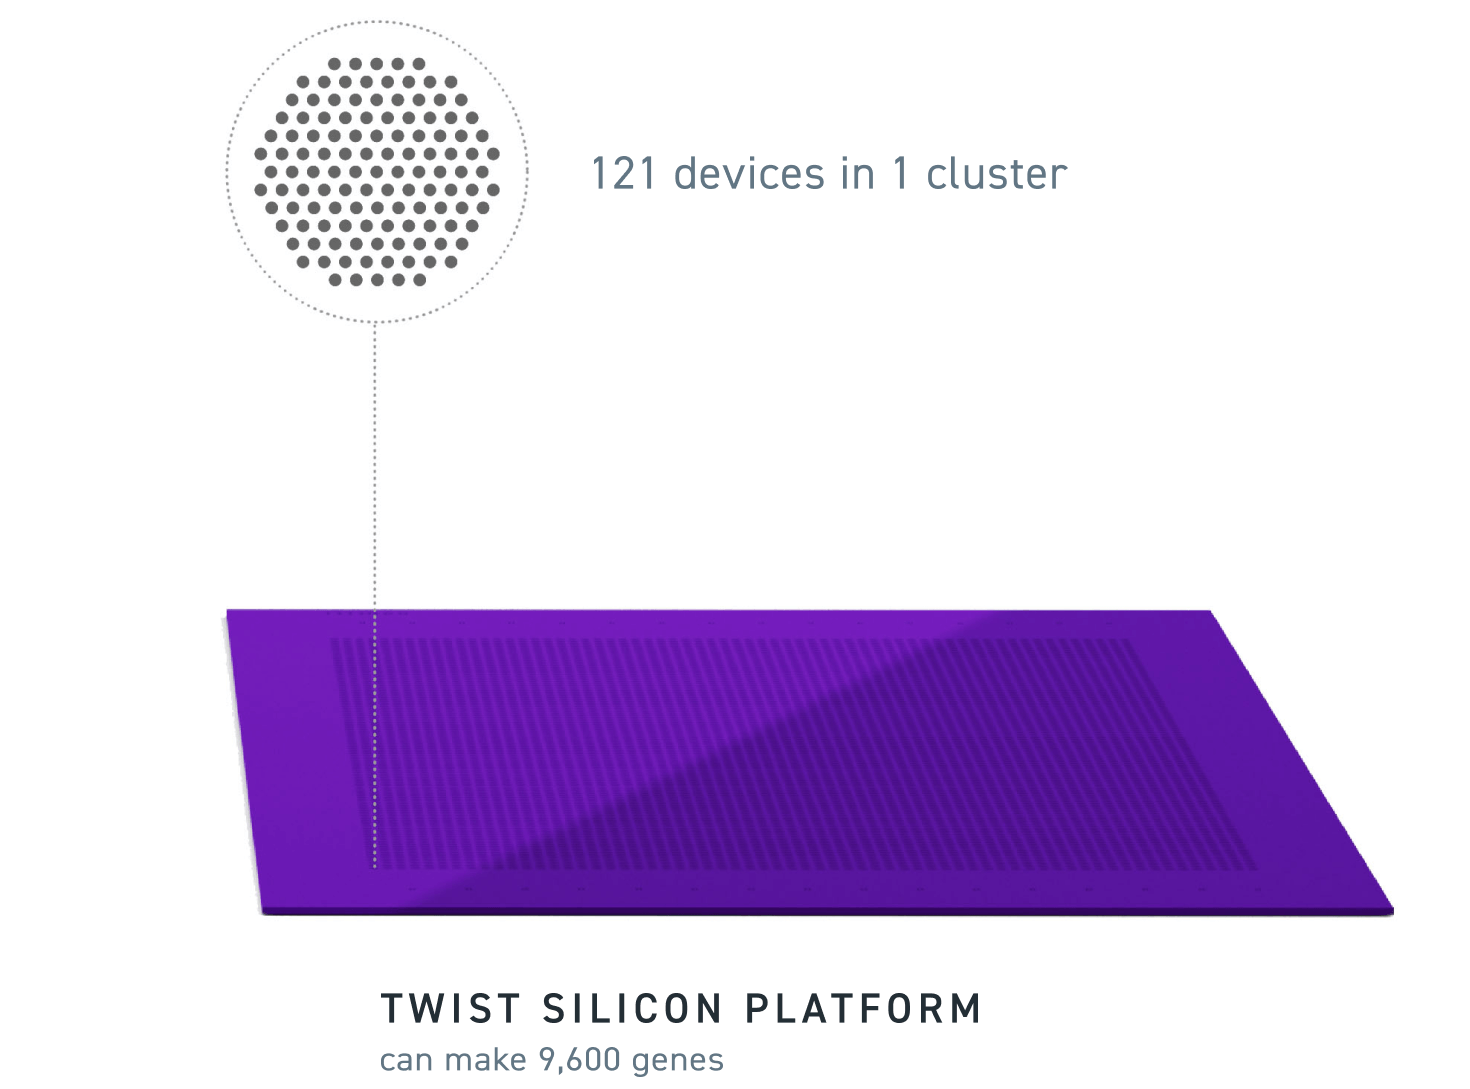 twist silicon platform